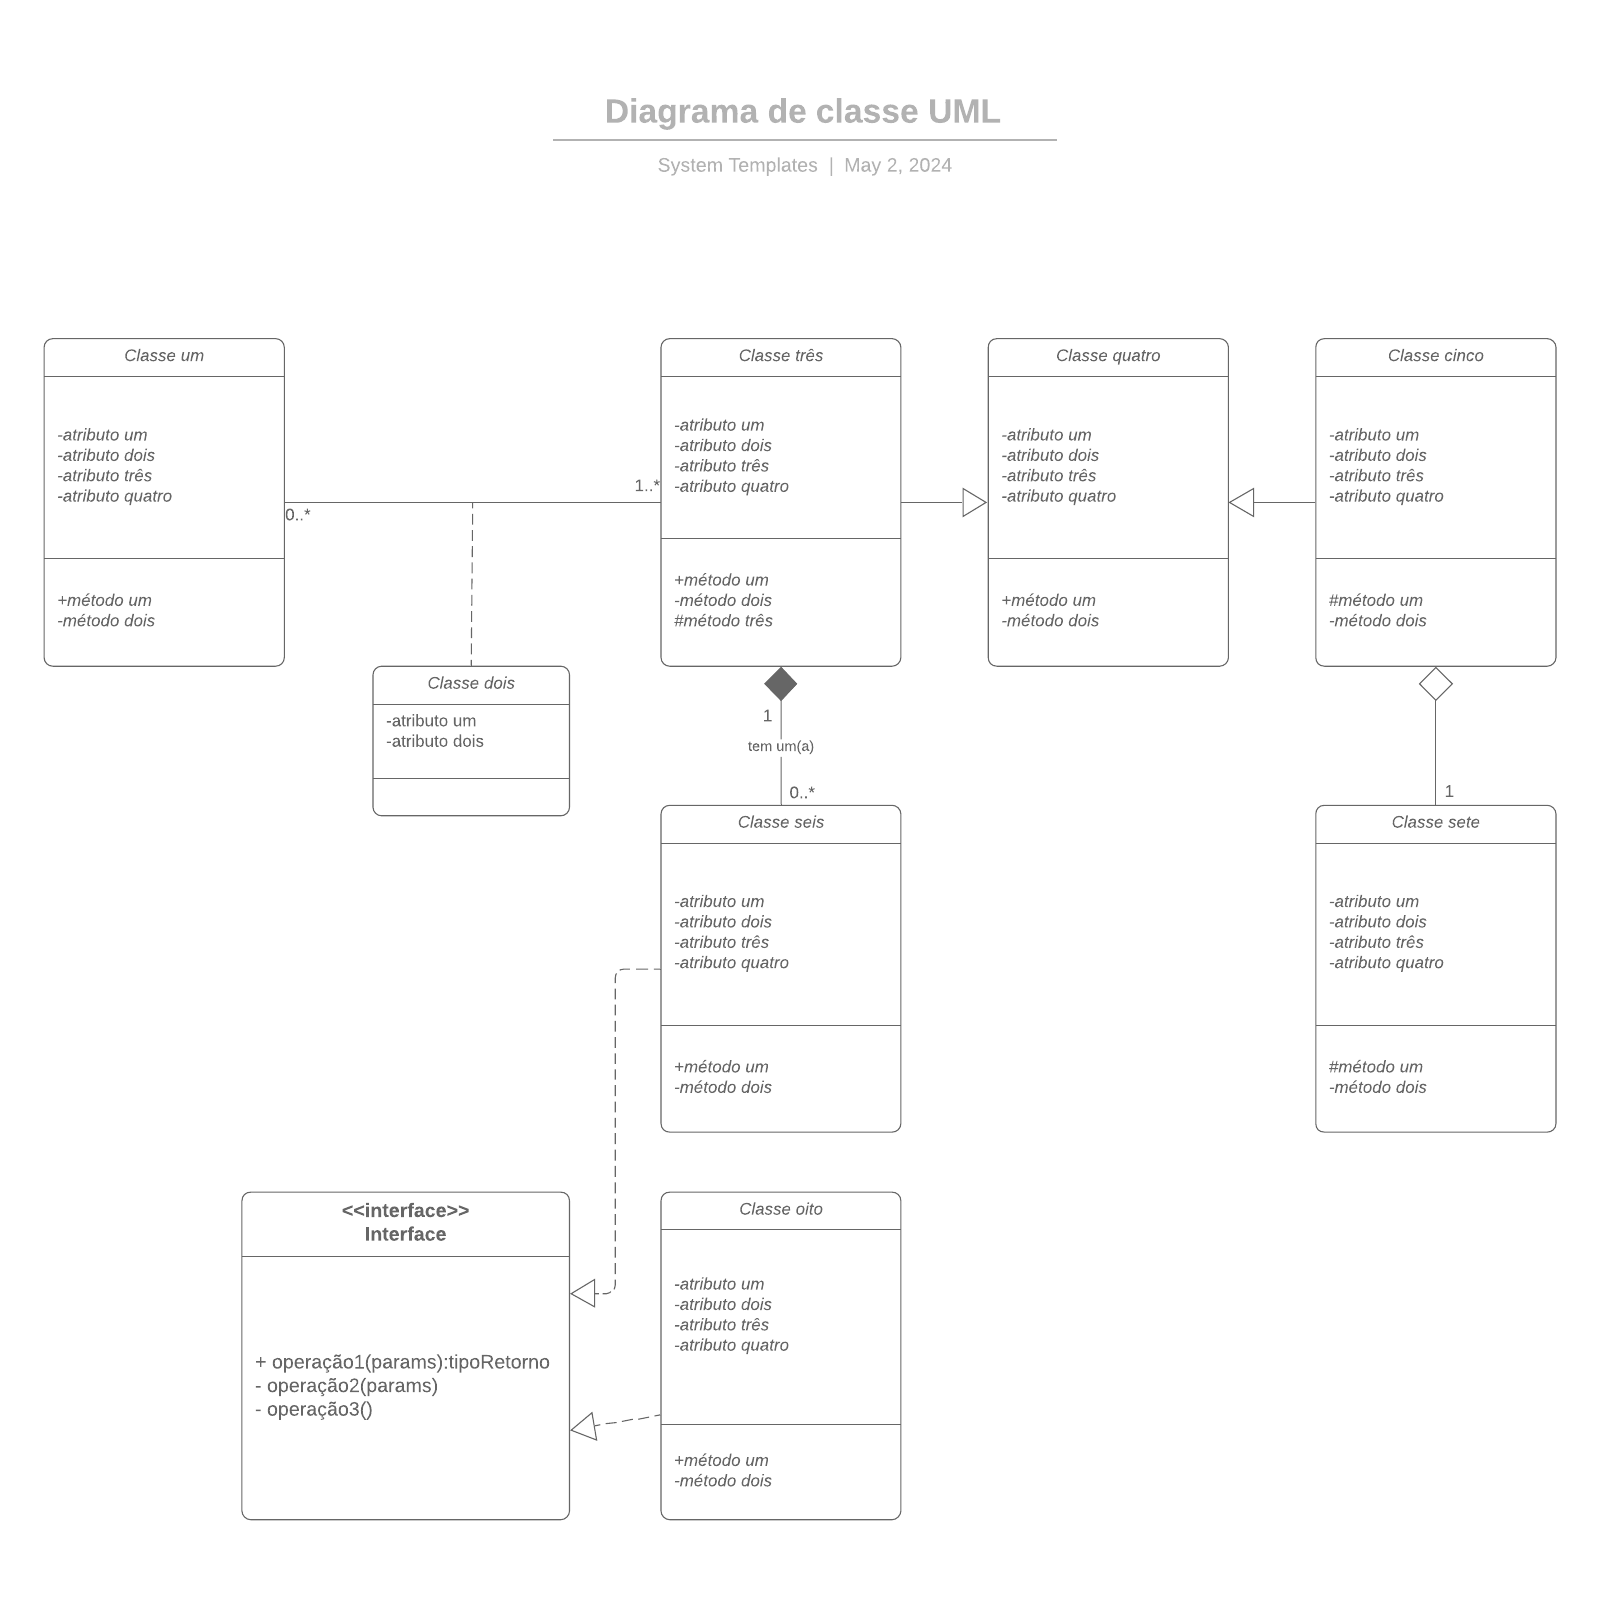 Diagrama de classe UML example